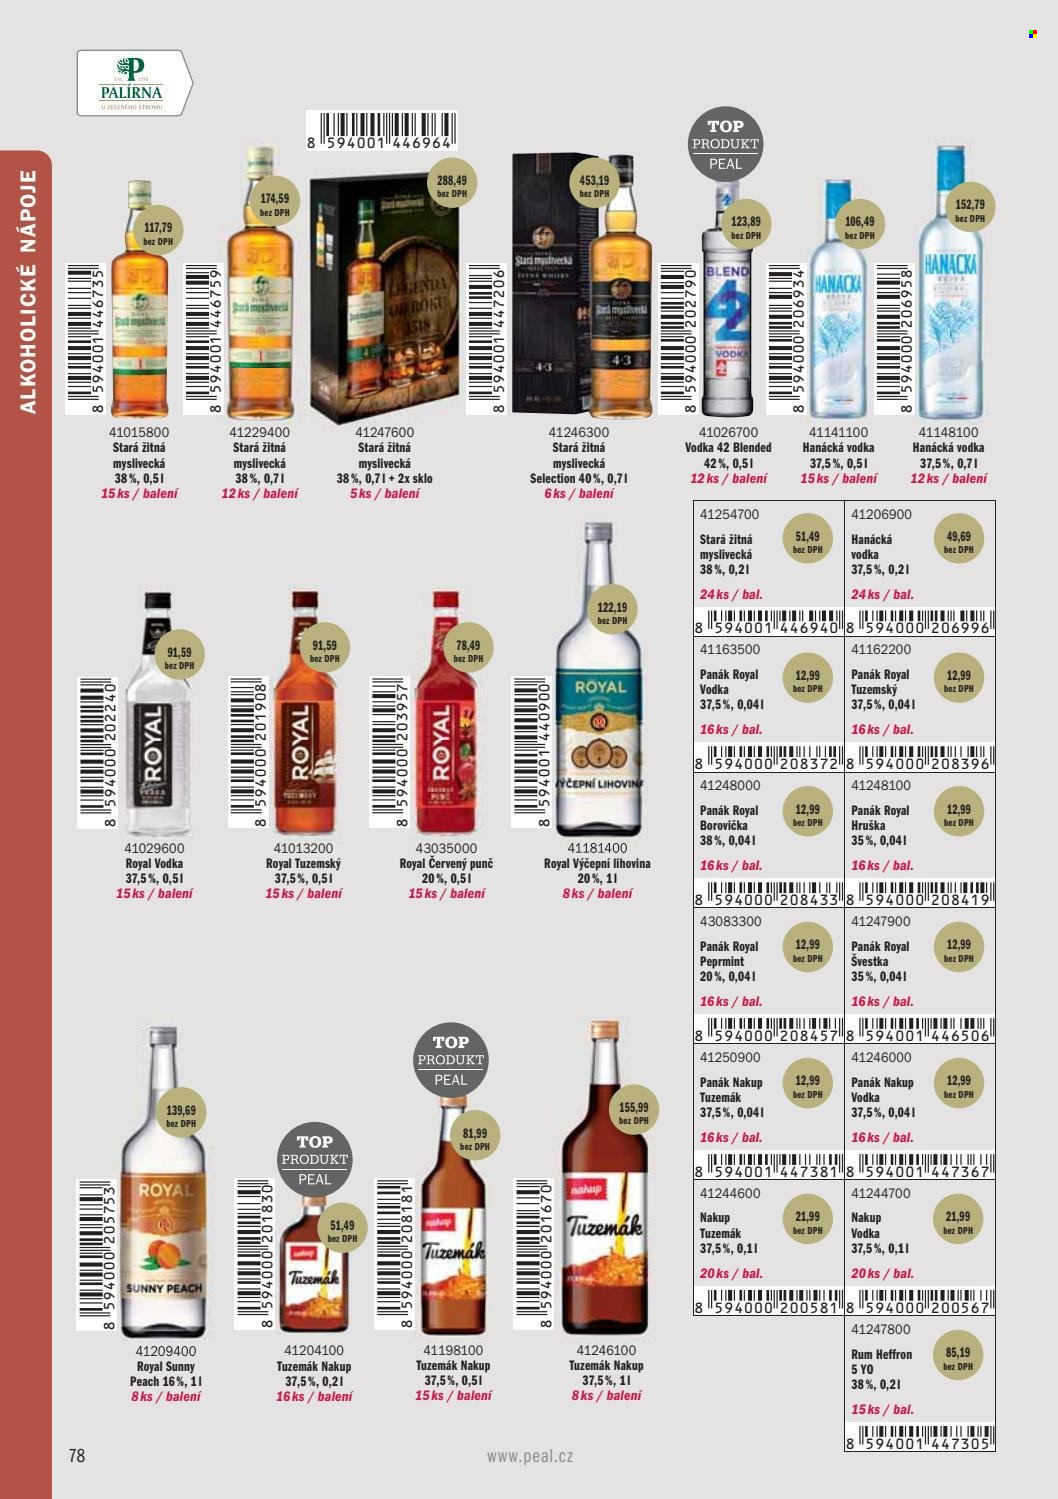 Leták PEAL - Produkty v akci - punč, alkohol, Stará Myslivecká, vodka, rum, Tuzemák, whisky, borovička, Vodka 42, Hanácká vodka, peprmintový likér, Heffron, Royal. Strana 80.